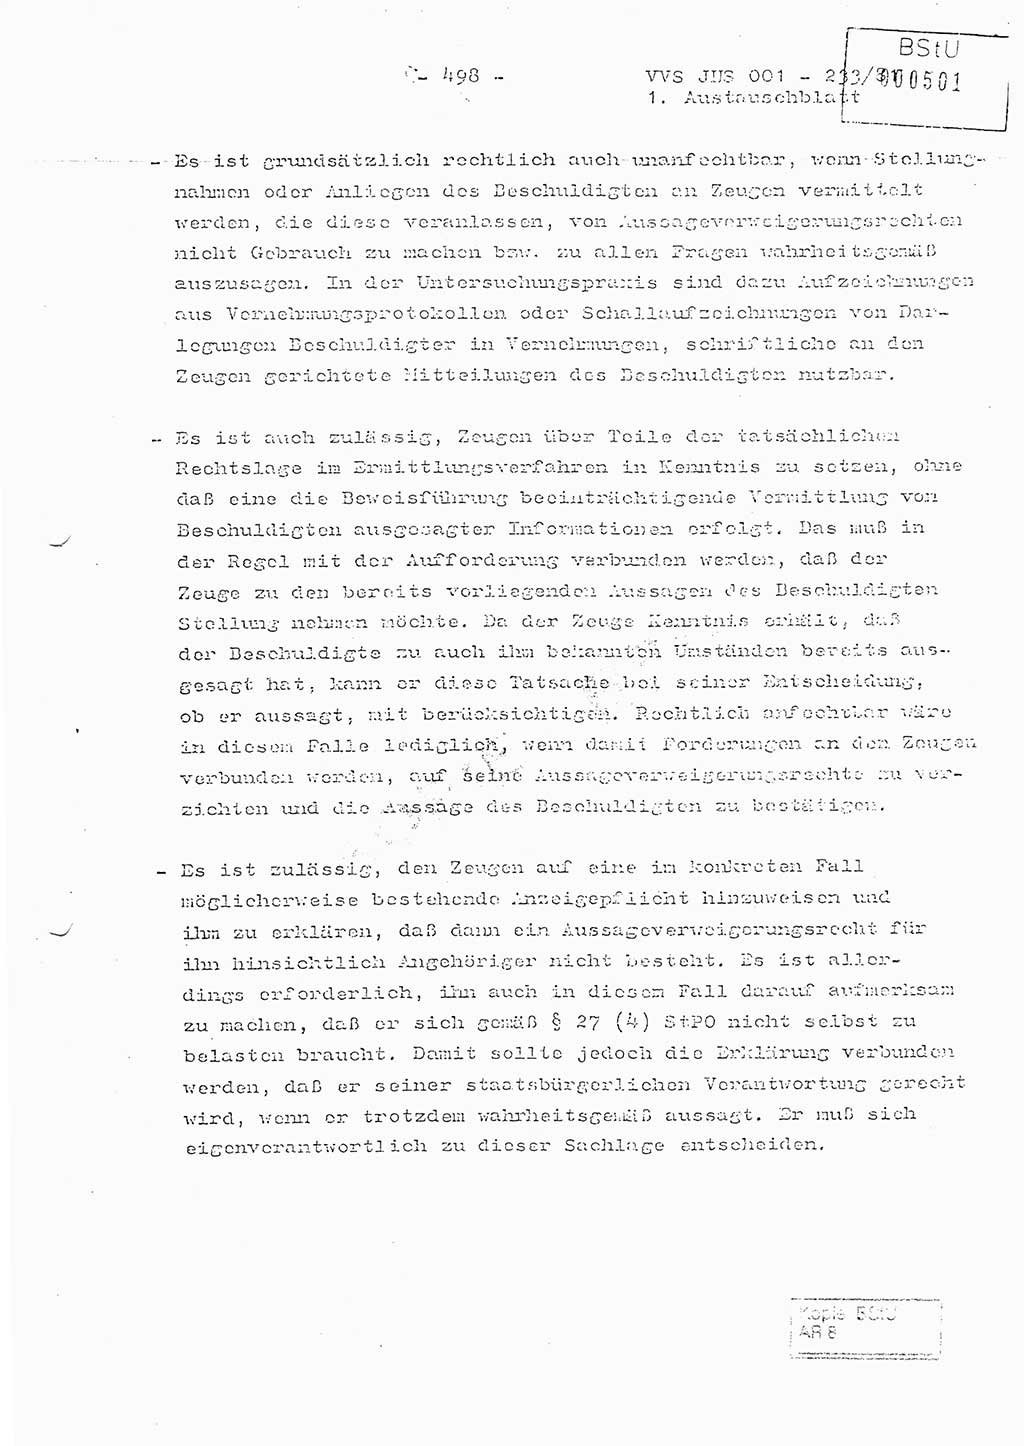 Dissertation Oberstleutnant Horst Zank (JHS), Oberstleutnant Dr. Karl-Heinz Knoblauch (JHS), Oberstleutnant Gustav-Adolf Kowalewski (HA Ⅸ), Oberstleutnant Wolfgang Plötner (HA Ⅸ), Ministerium für Staatssicherheit (MfS) [Deutsche Demokratische Republik (DDR)], Juristische Hochschule (JHS), Vertrauliche Verschlußsache (VVS) o001-233/81, Potsdam 1981, Blatt 498 (Diss. MfS DDR JHS VVS o001-233/81 1981, Bl. 498)